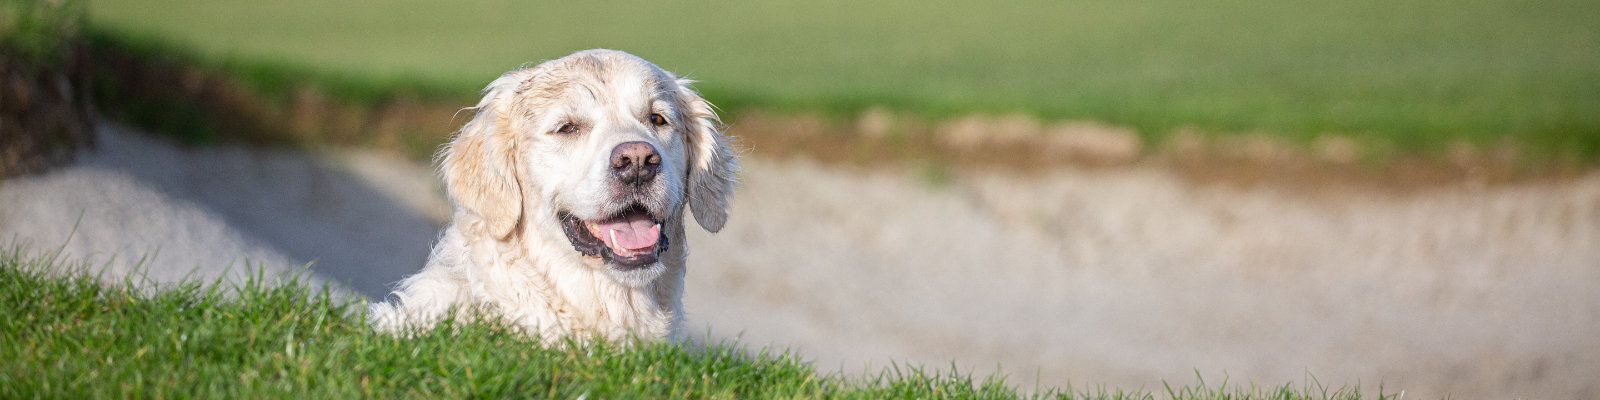 Hund auf dem Golfplatz (photo by Chedko / Shutterstock.com)